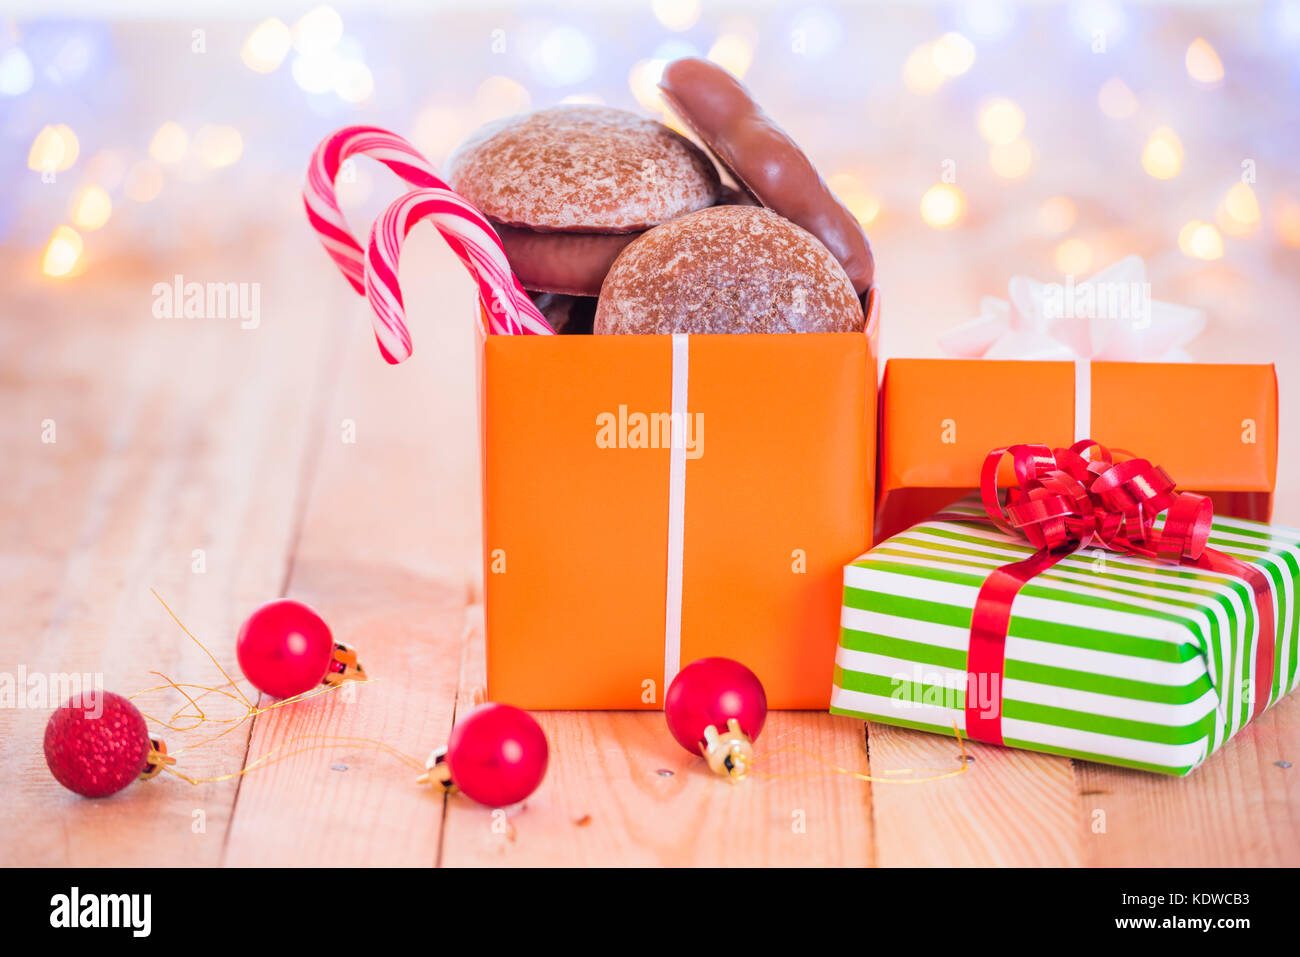 Se presenta con pan de jengibre y caramelos en su interior, en una mesa de madera, rodeado de globos rojos y difuminan las luces de Navidad en el fondo. Foto de stock